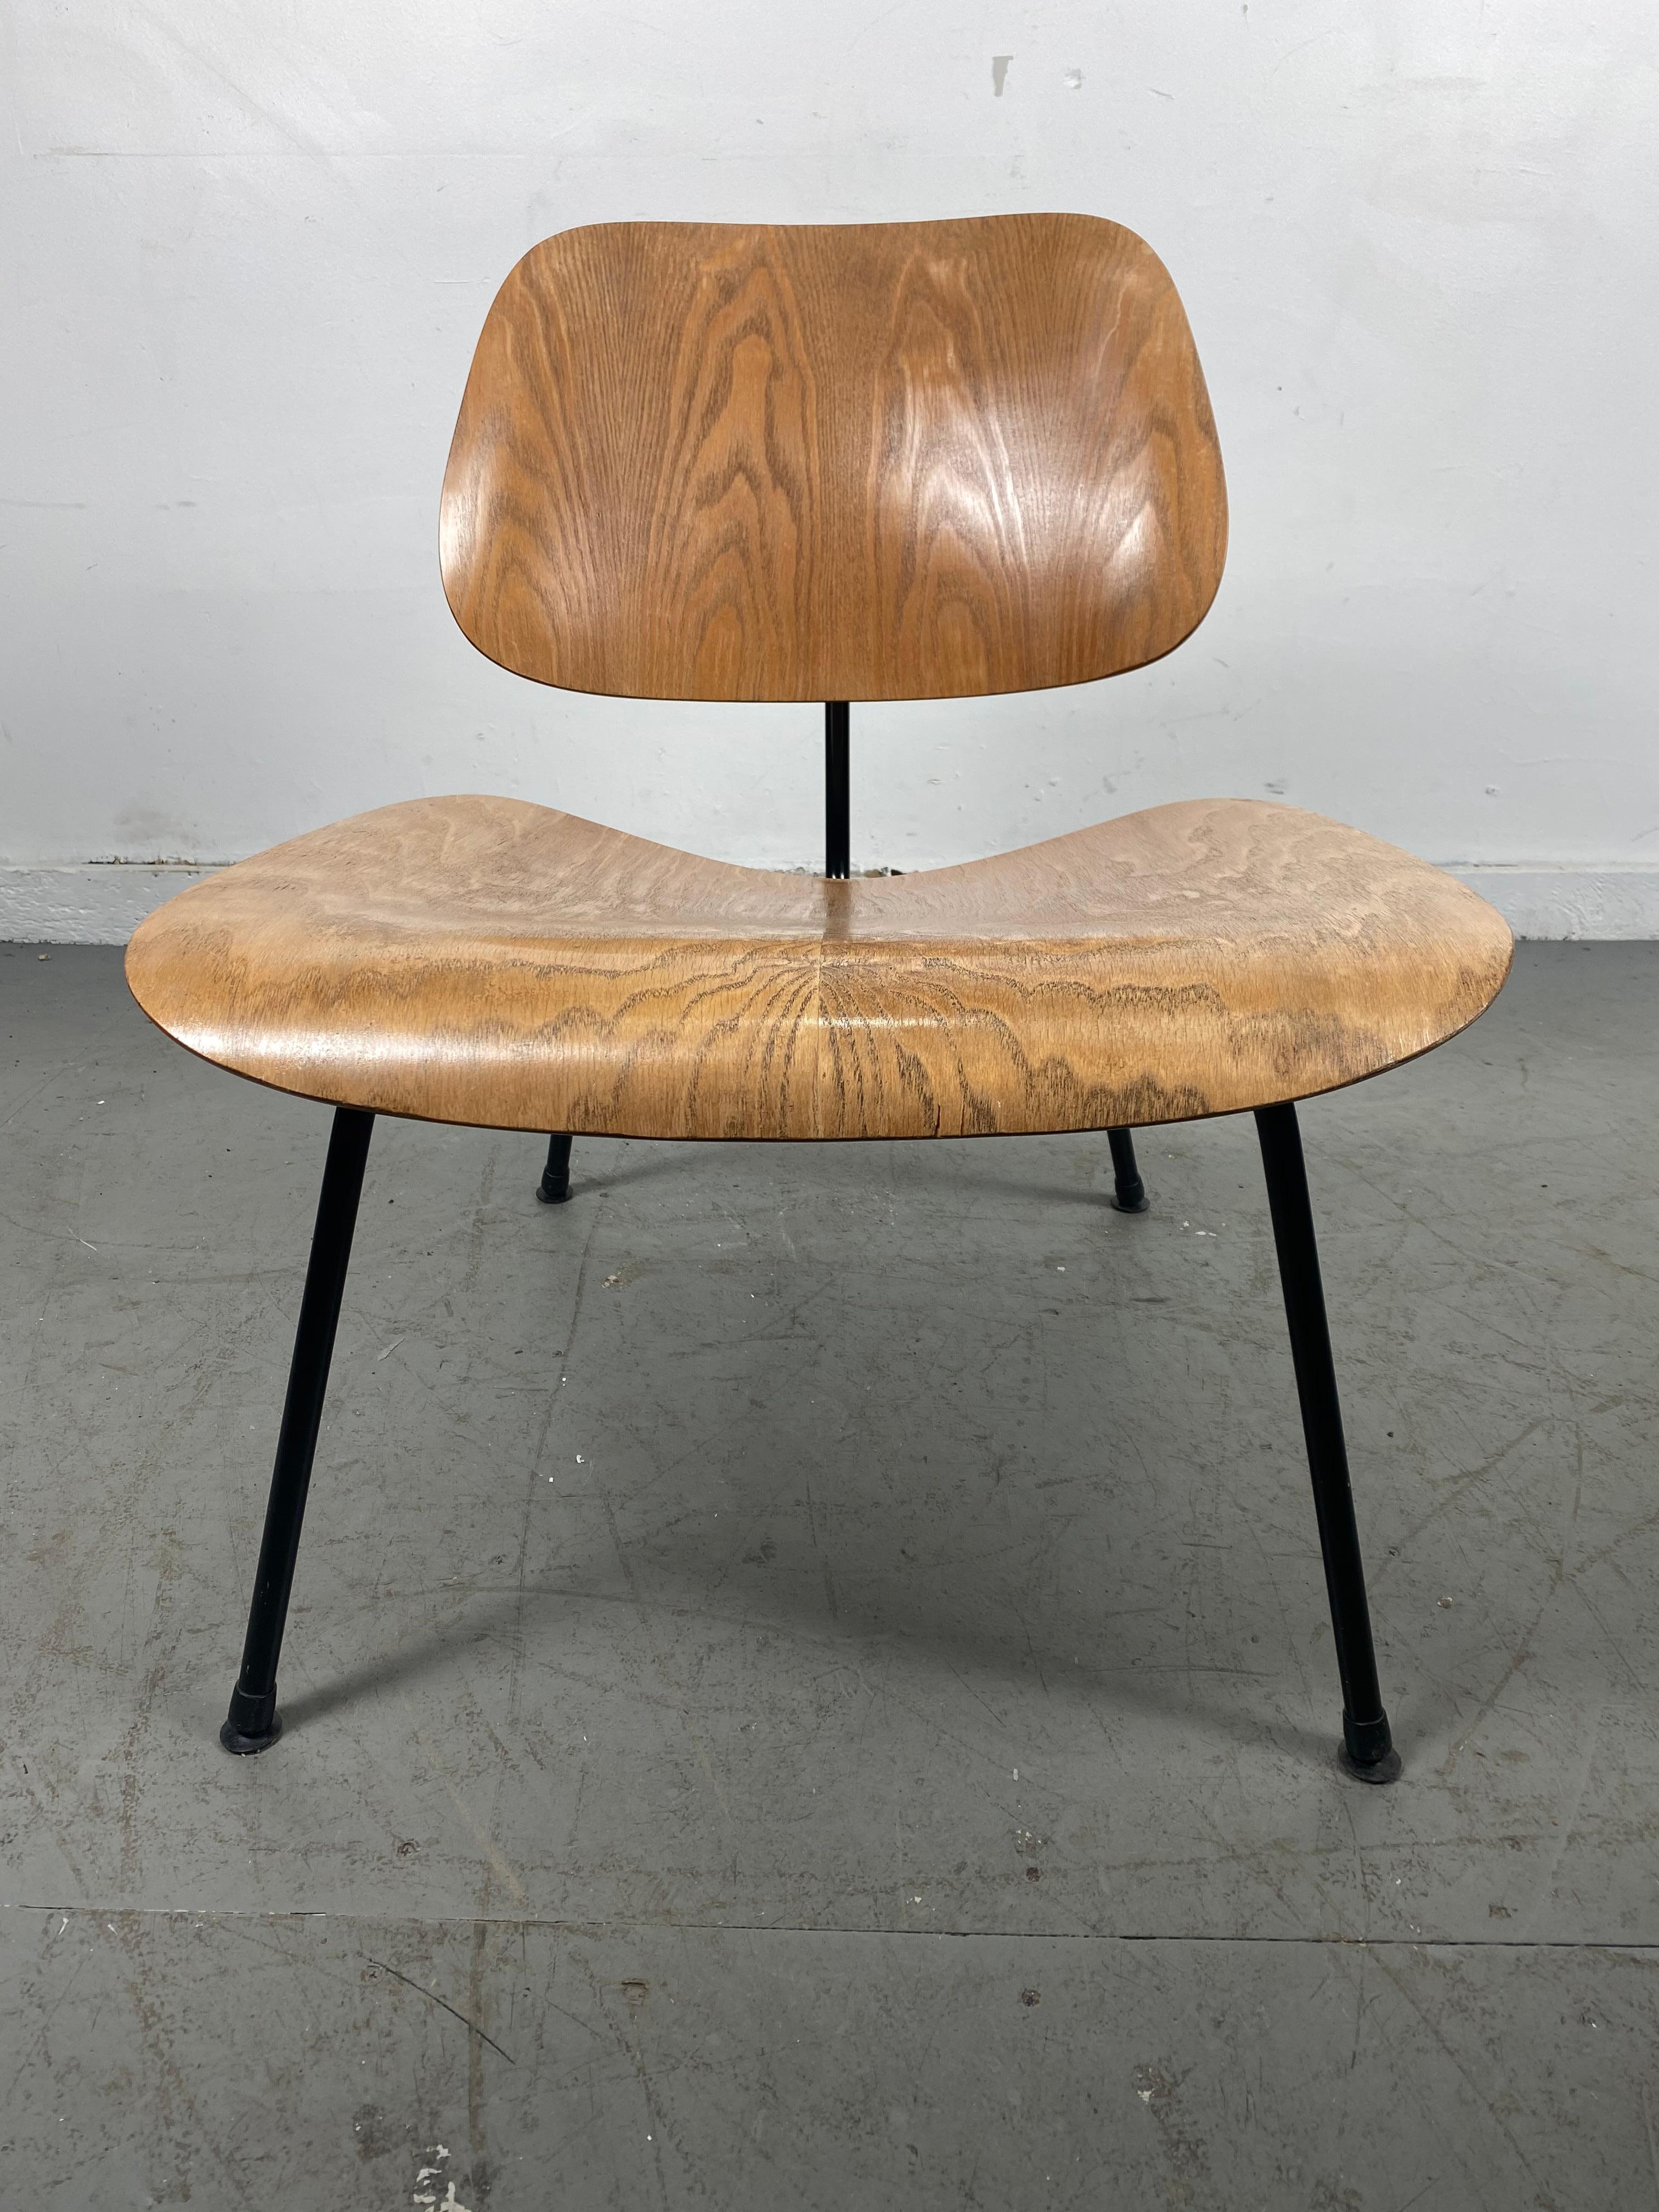 Chaise longue Eames LCM, Herman Miller, USA, années 1950, frêne avec base noire, magnifique exemple, belle finition d'origine, patine, conserve l'impression LCM sous l'assise en chips, Sculpture fonctionnelle classique, art.